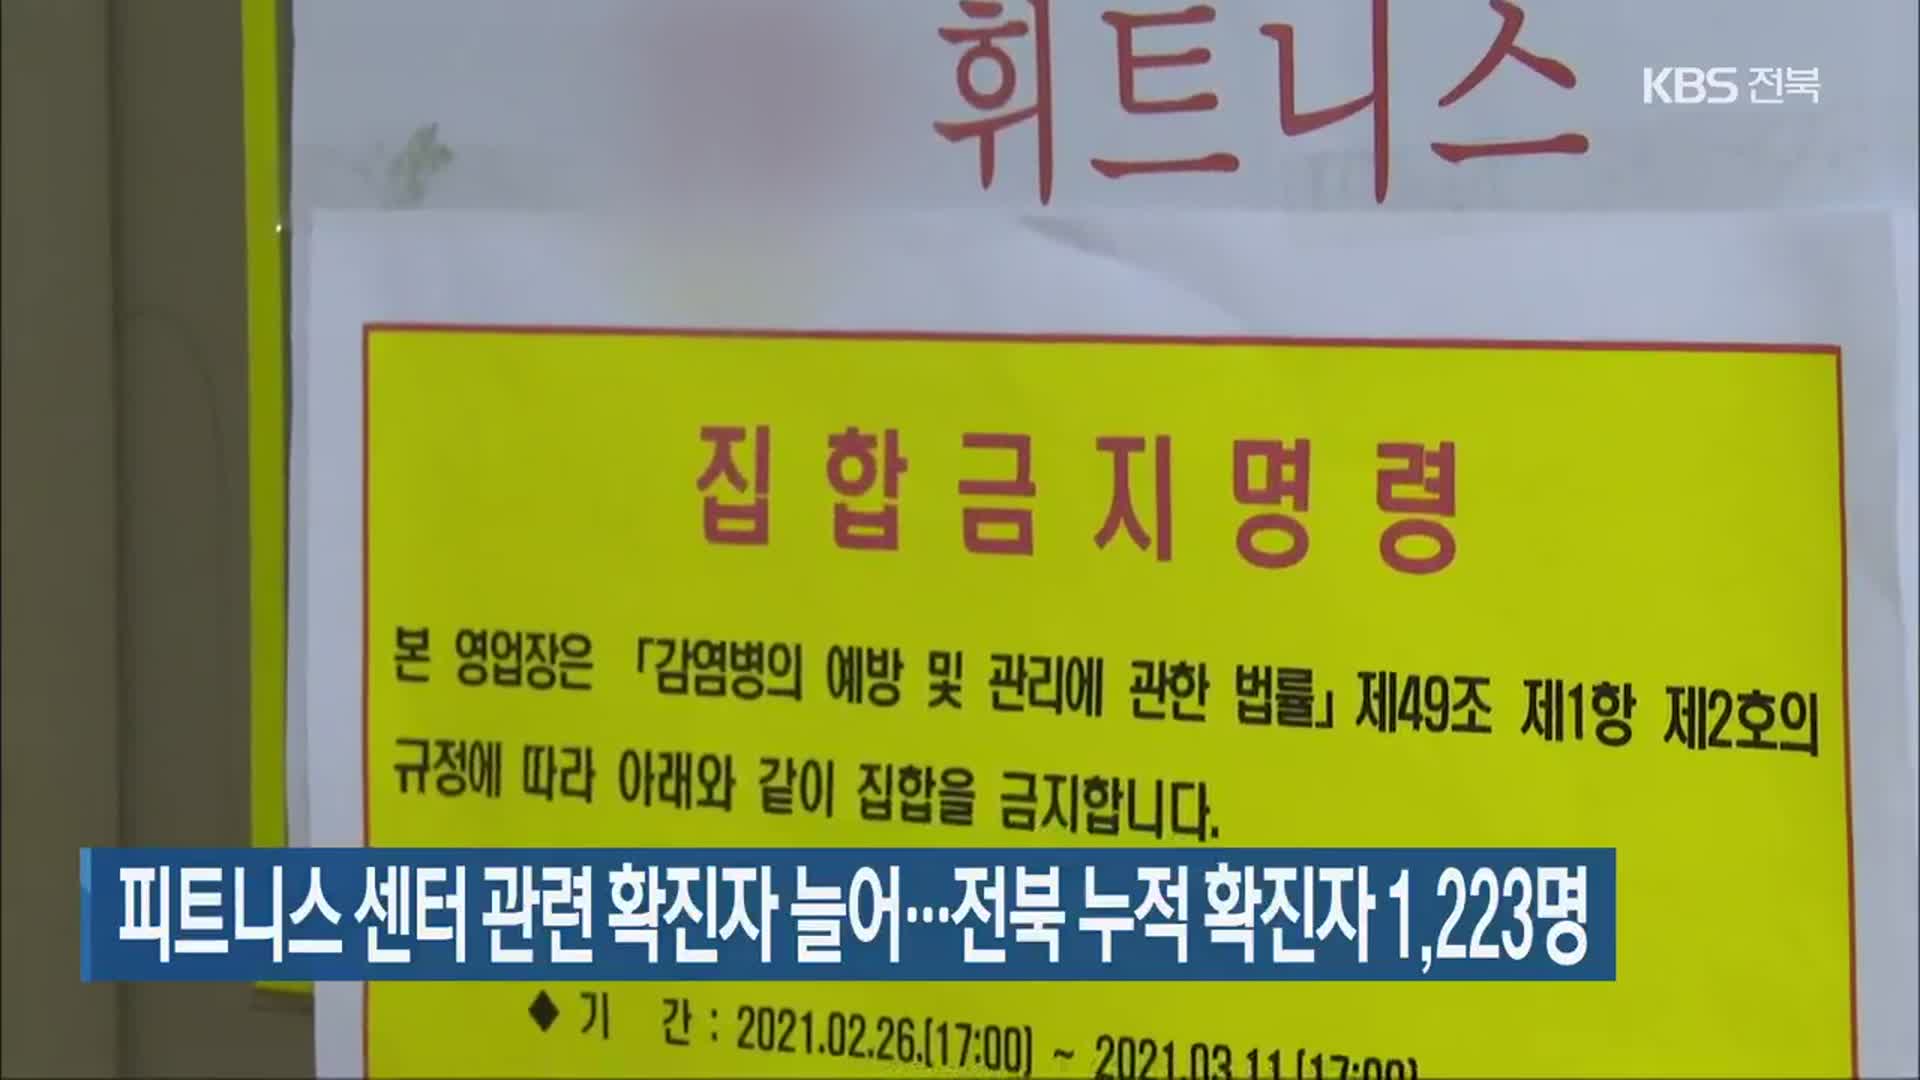 피트니스 센터 관련 확진자 늘어…전북 누적 확진자 1,223명